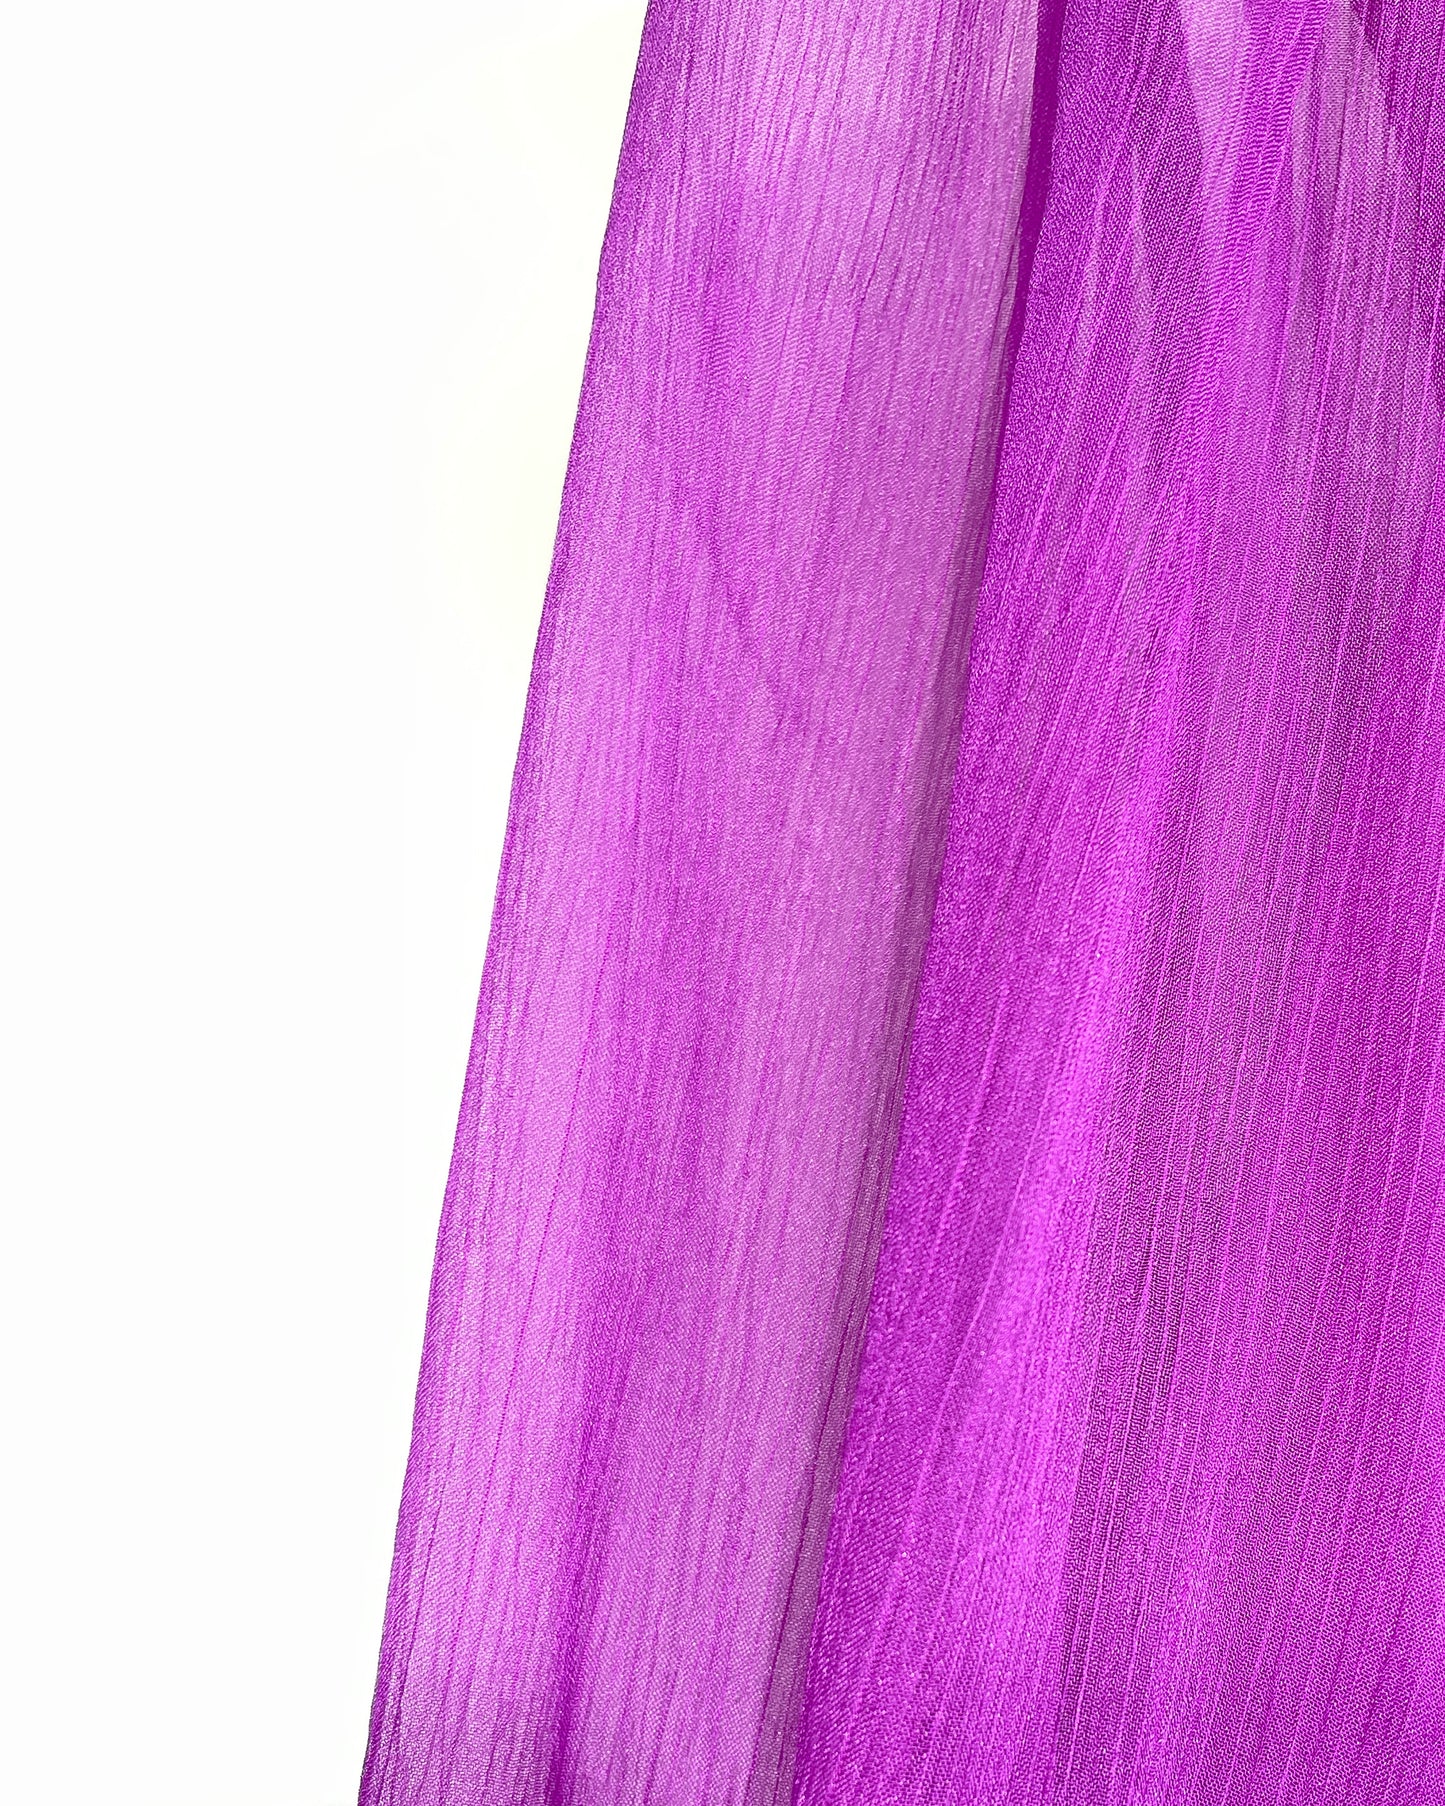 Chiffon purple party dress